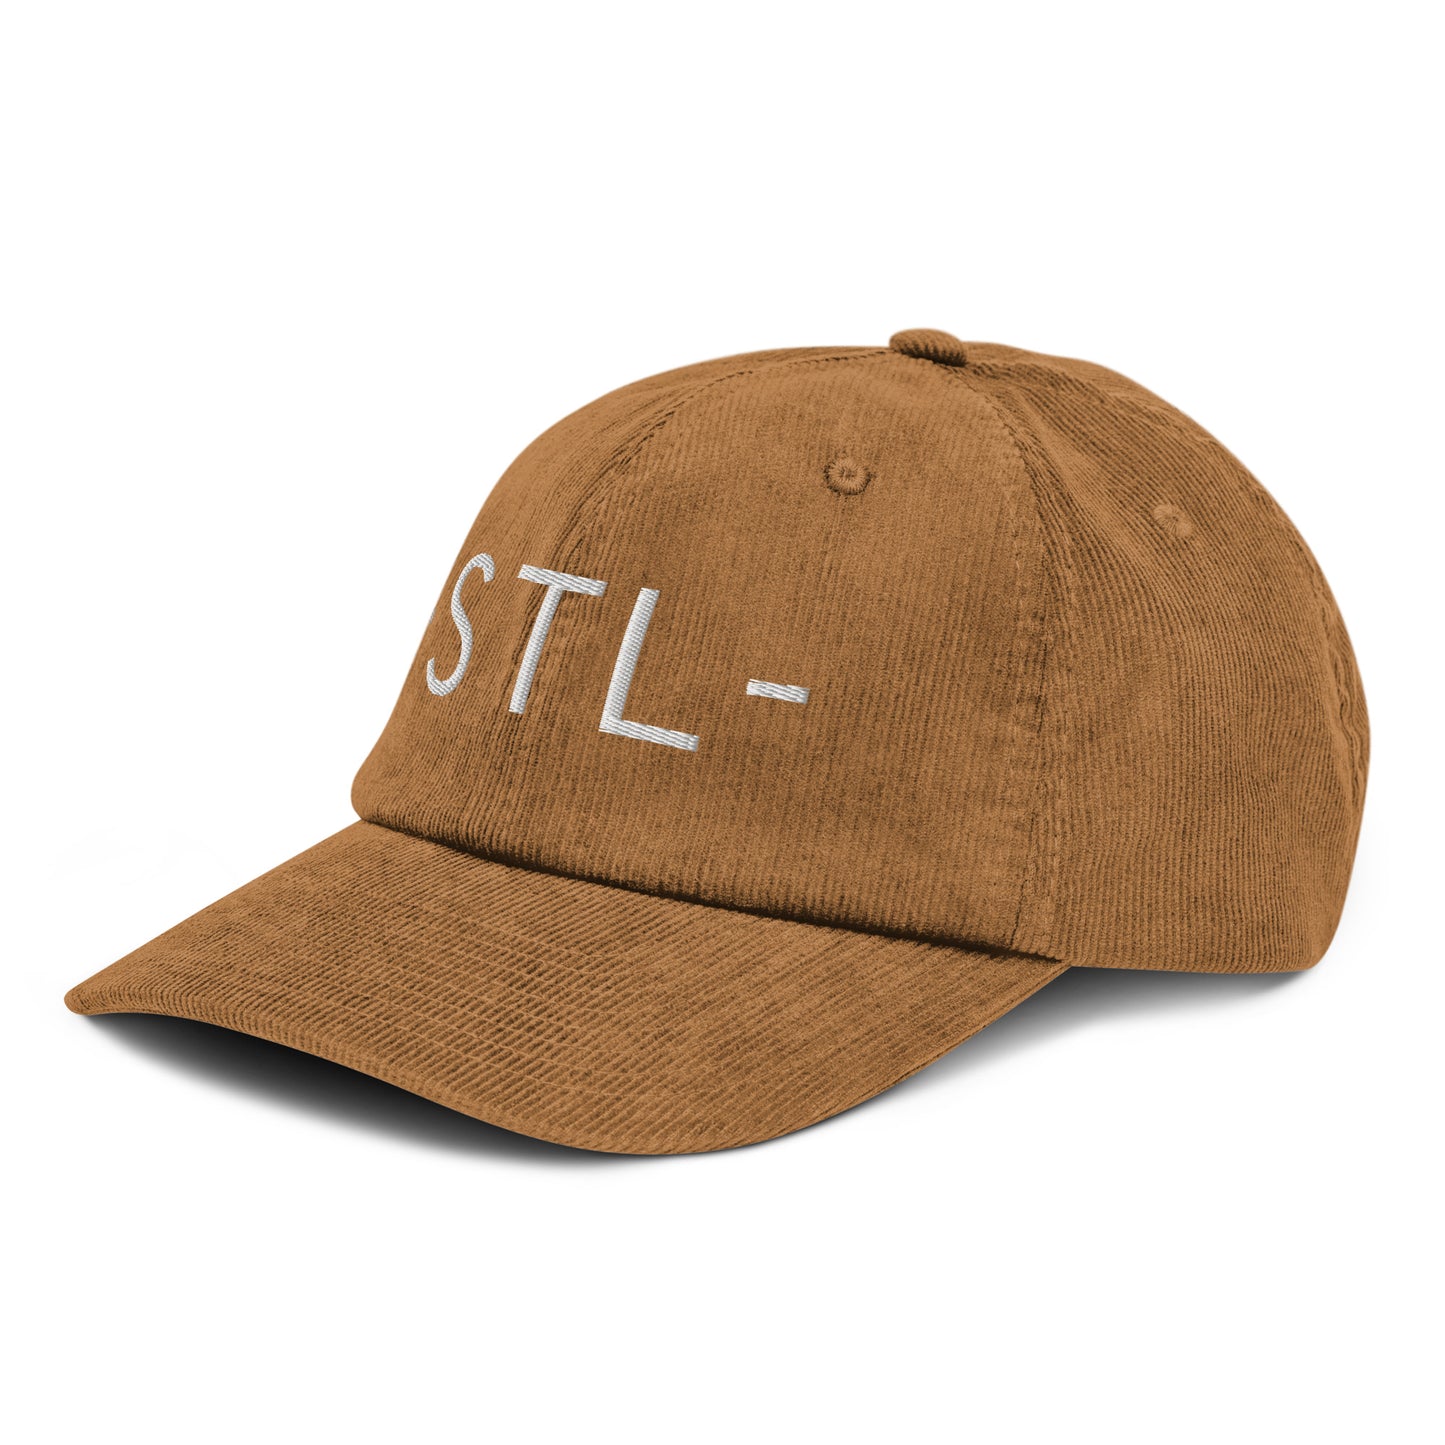 Souvenir Corduroy Hat - White • STL St. Louis • YHM Designs - Image 19